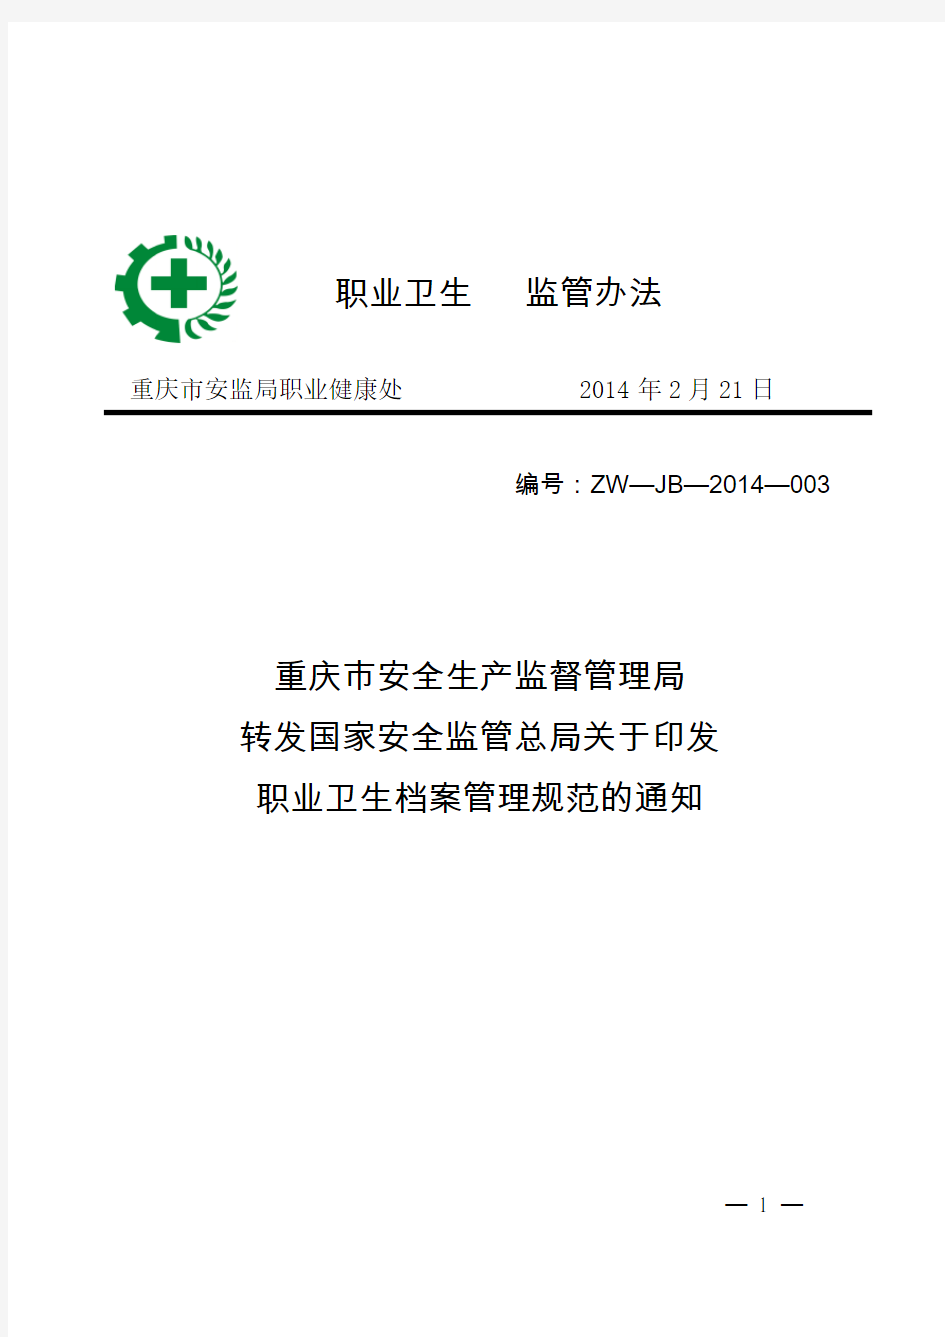 《职业卫生档案管理规范》(安监总厅安健〔2013〕171号)